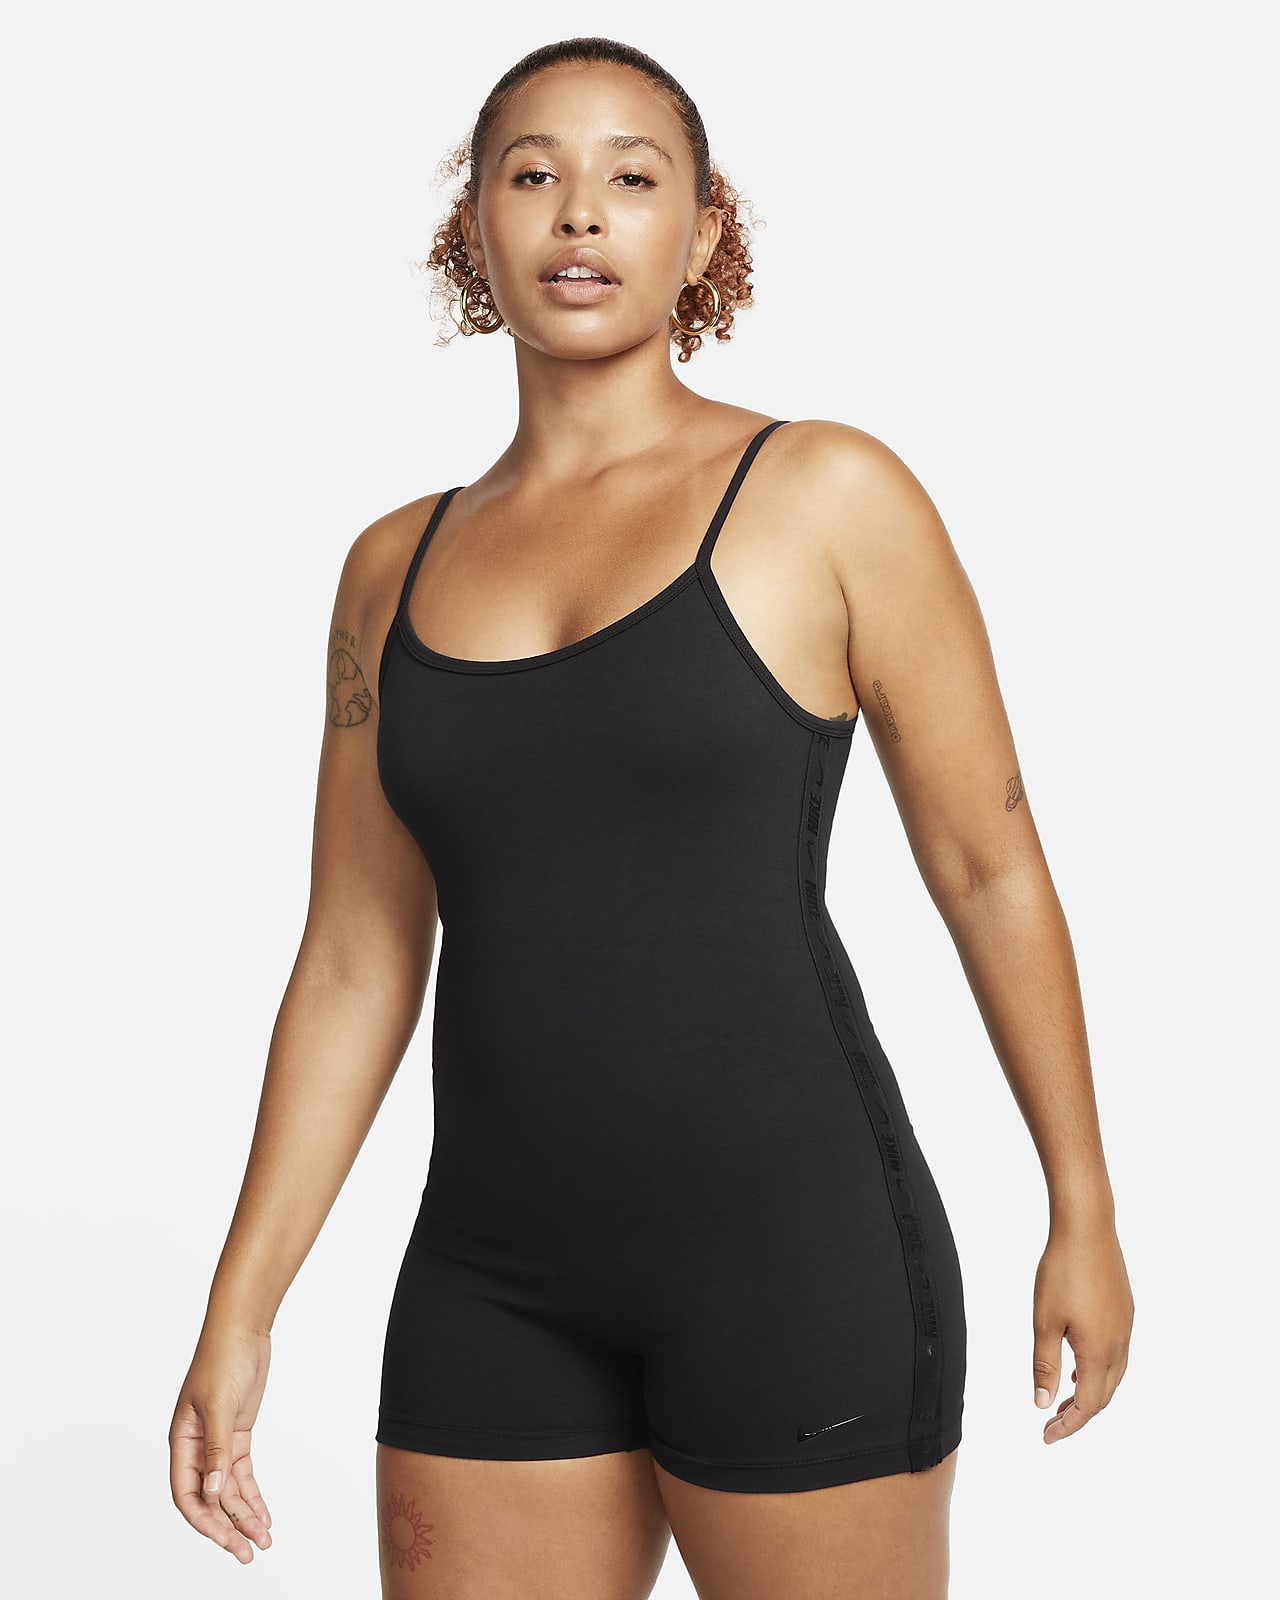 Nike City Ready Sportswear Tech Pack Women's Bodysuit Long Sleeve  Thumbholes